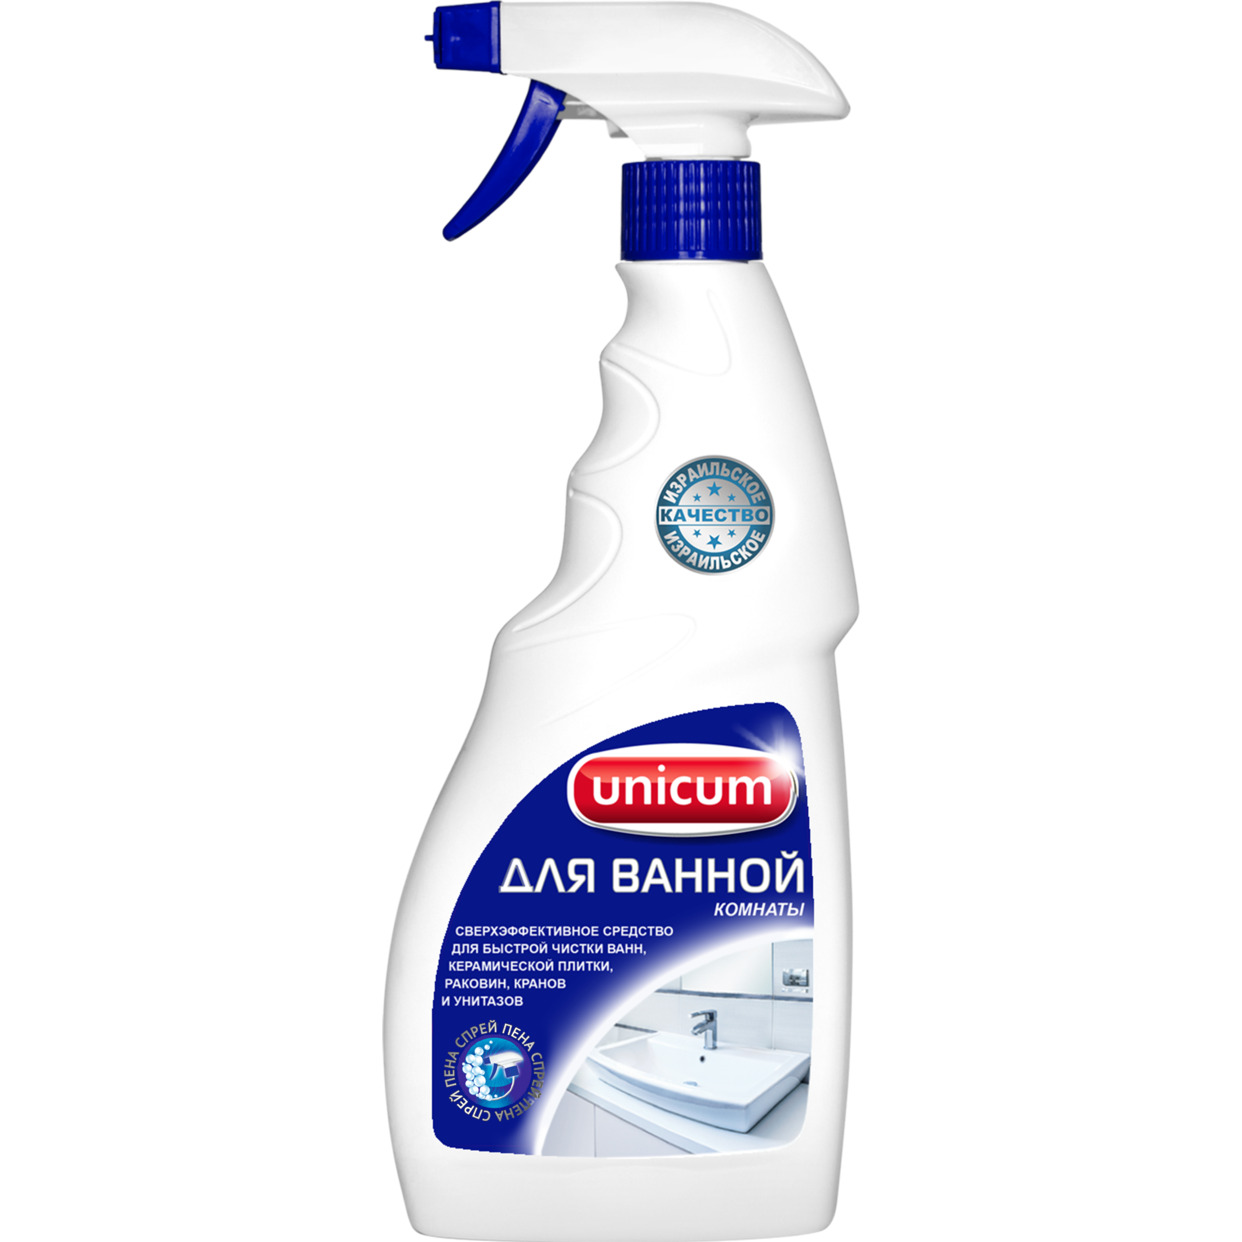 Акция в Пятерочке на Средство для чистки ванной комнаты Unicum 500 мл